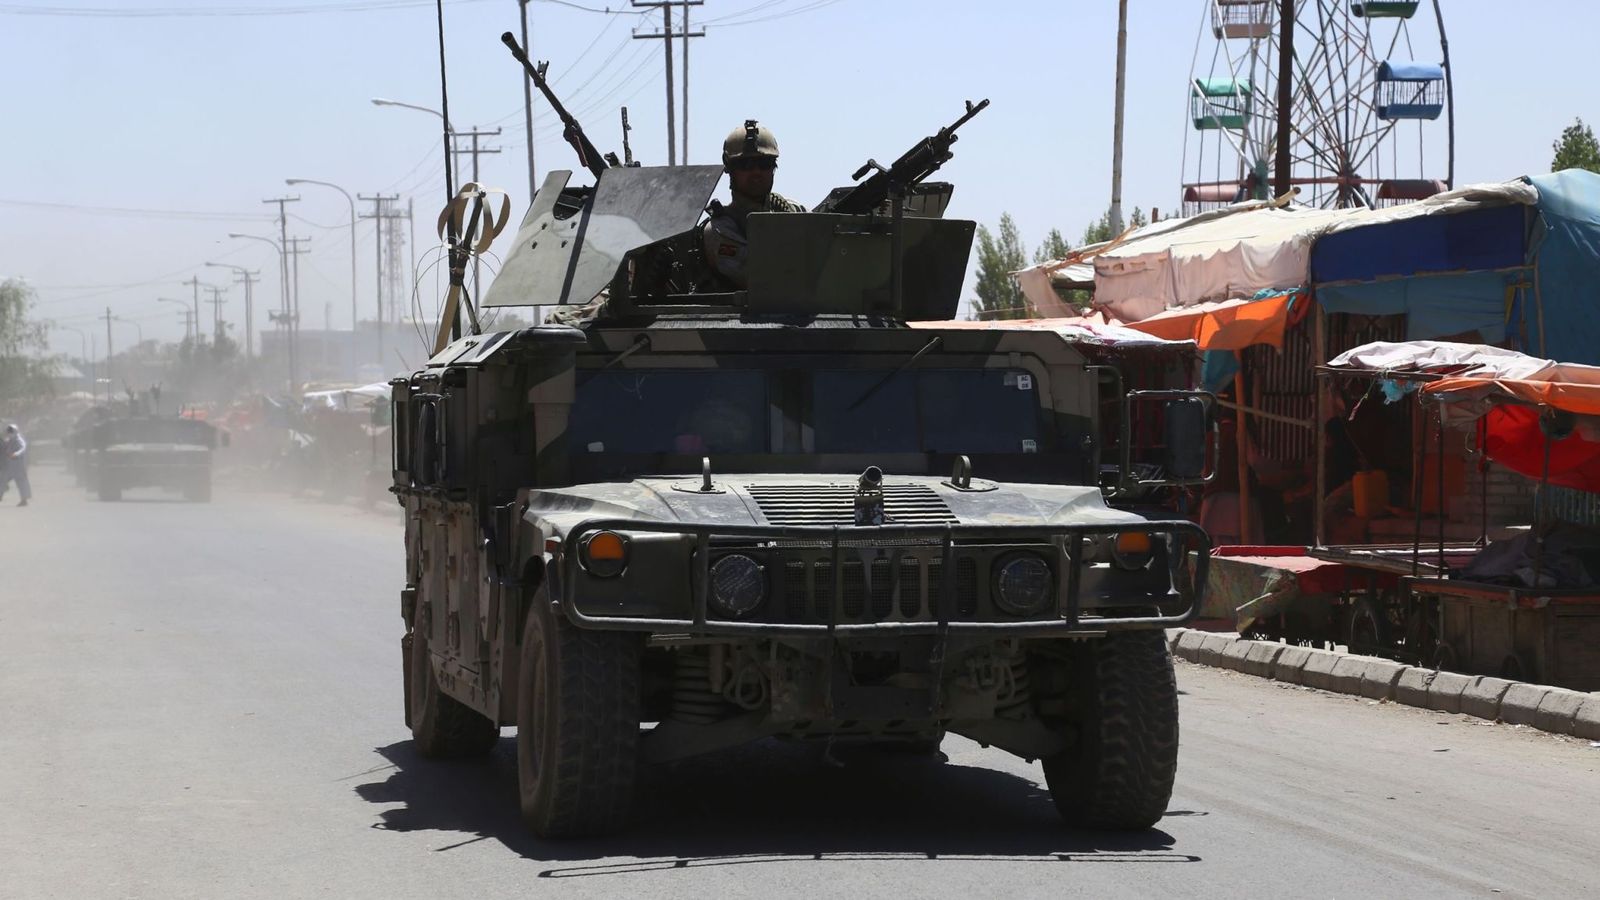 40 phiến quân Taliban đã bị tiêu diệt trong hôm thứ Bảy vừa qua (14.9) (Ảnh: Sky News)